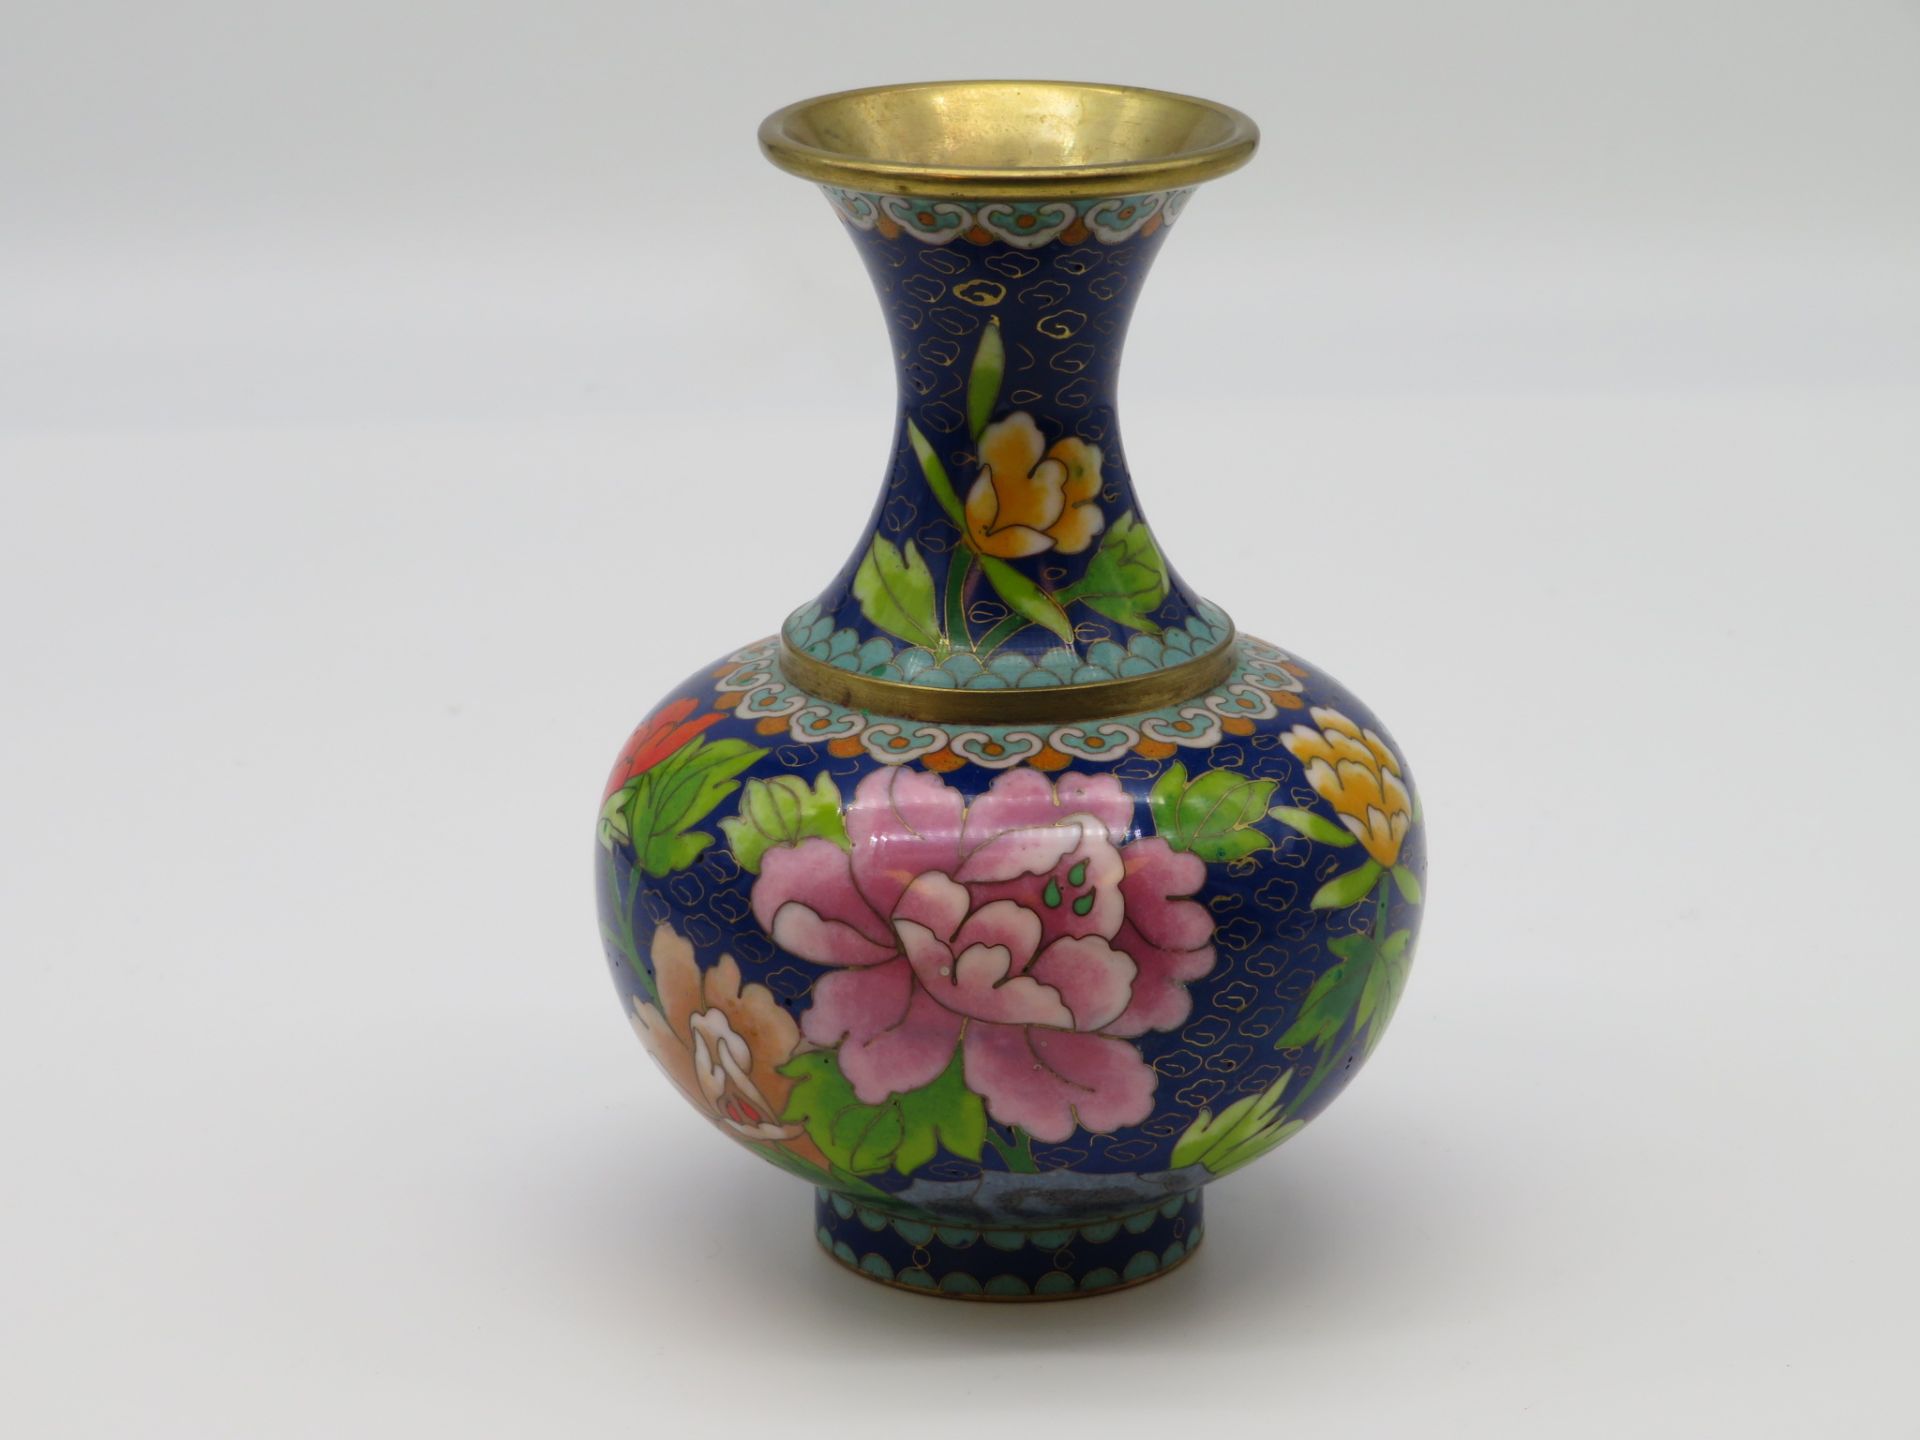 Cloisonné Vase, China, farbiger Zellenschmelz mit Blütendekor, h 15 cm, d 10,5 cm.